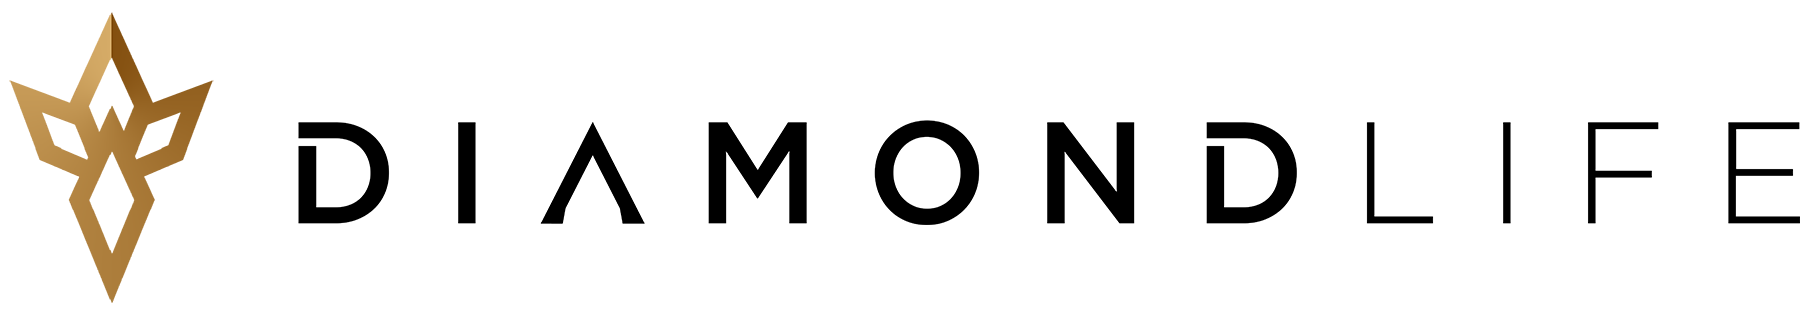 diamondLife's logo